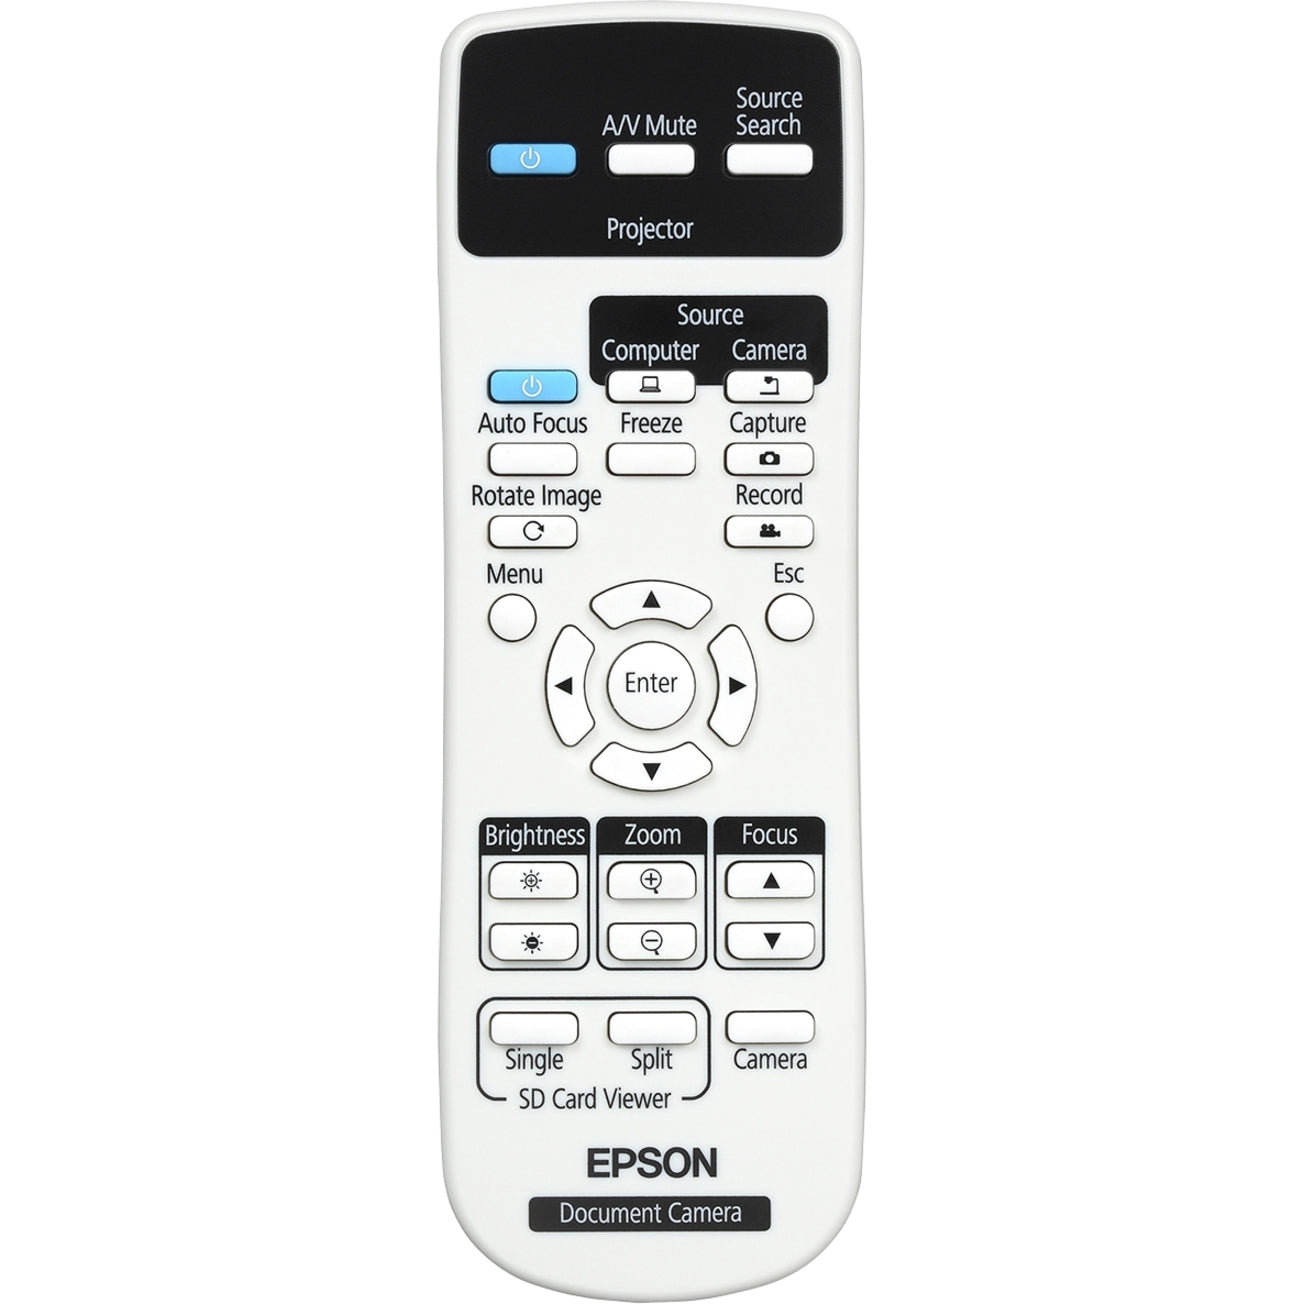 エプソン V12H758020 DC-21 ドキュメントカメラ、2メガピクセル、VGA/HDMI/USB接続 ブランド名: エプソン (Epson)